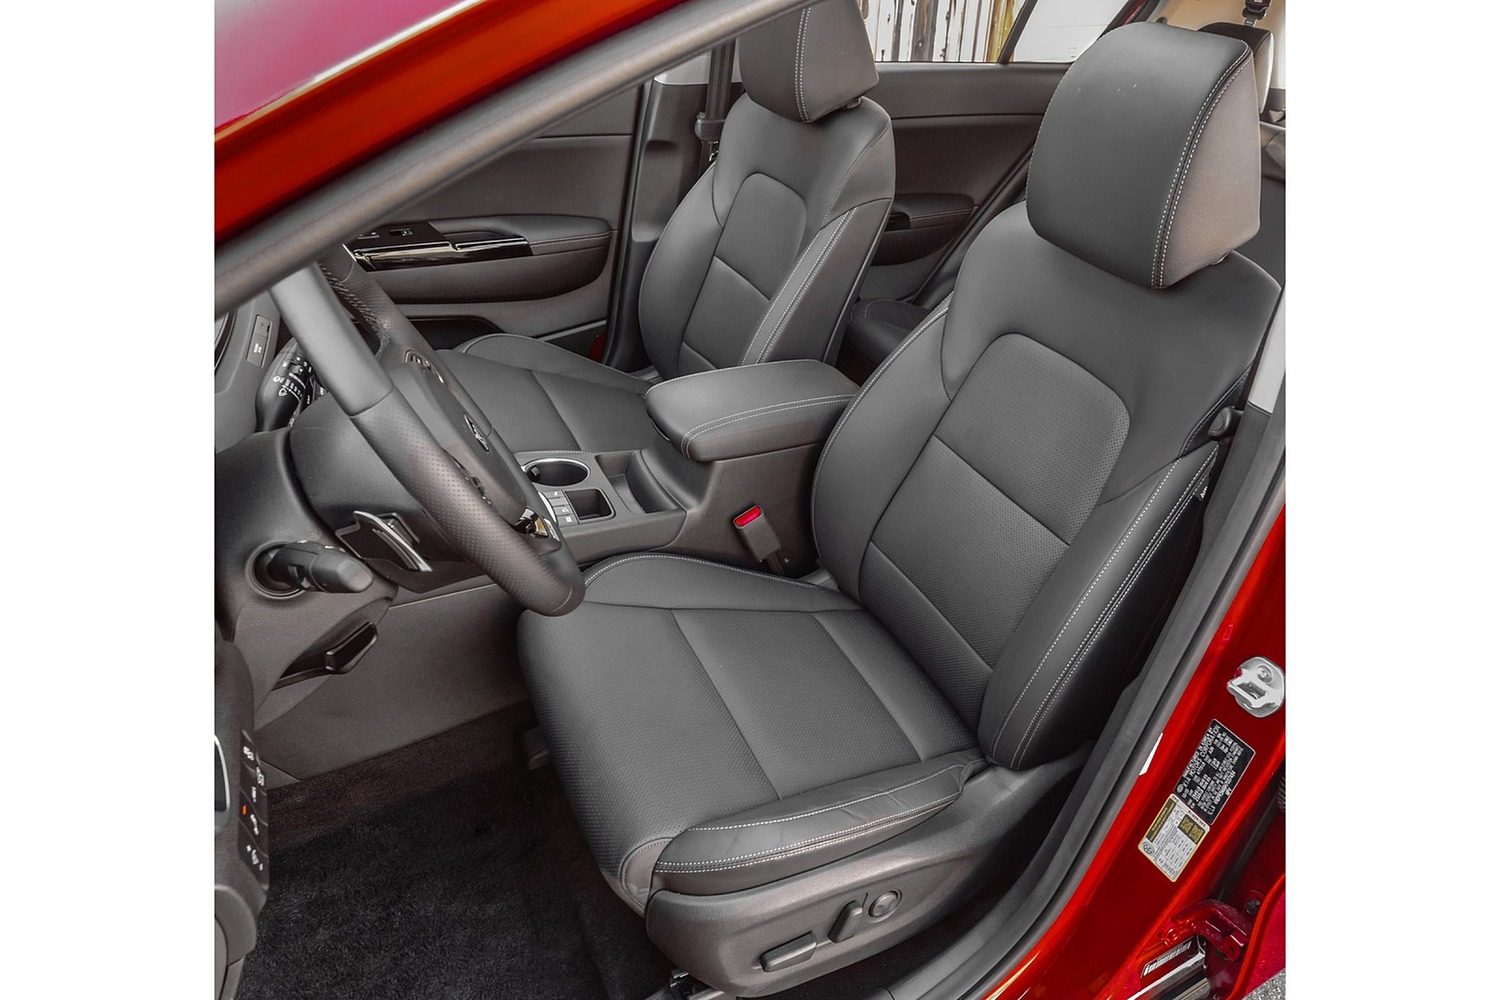 2017 Kia Sportage SX 4dr SUV Interior Shown